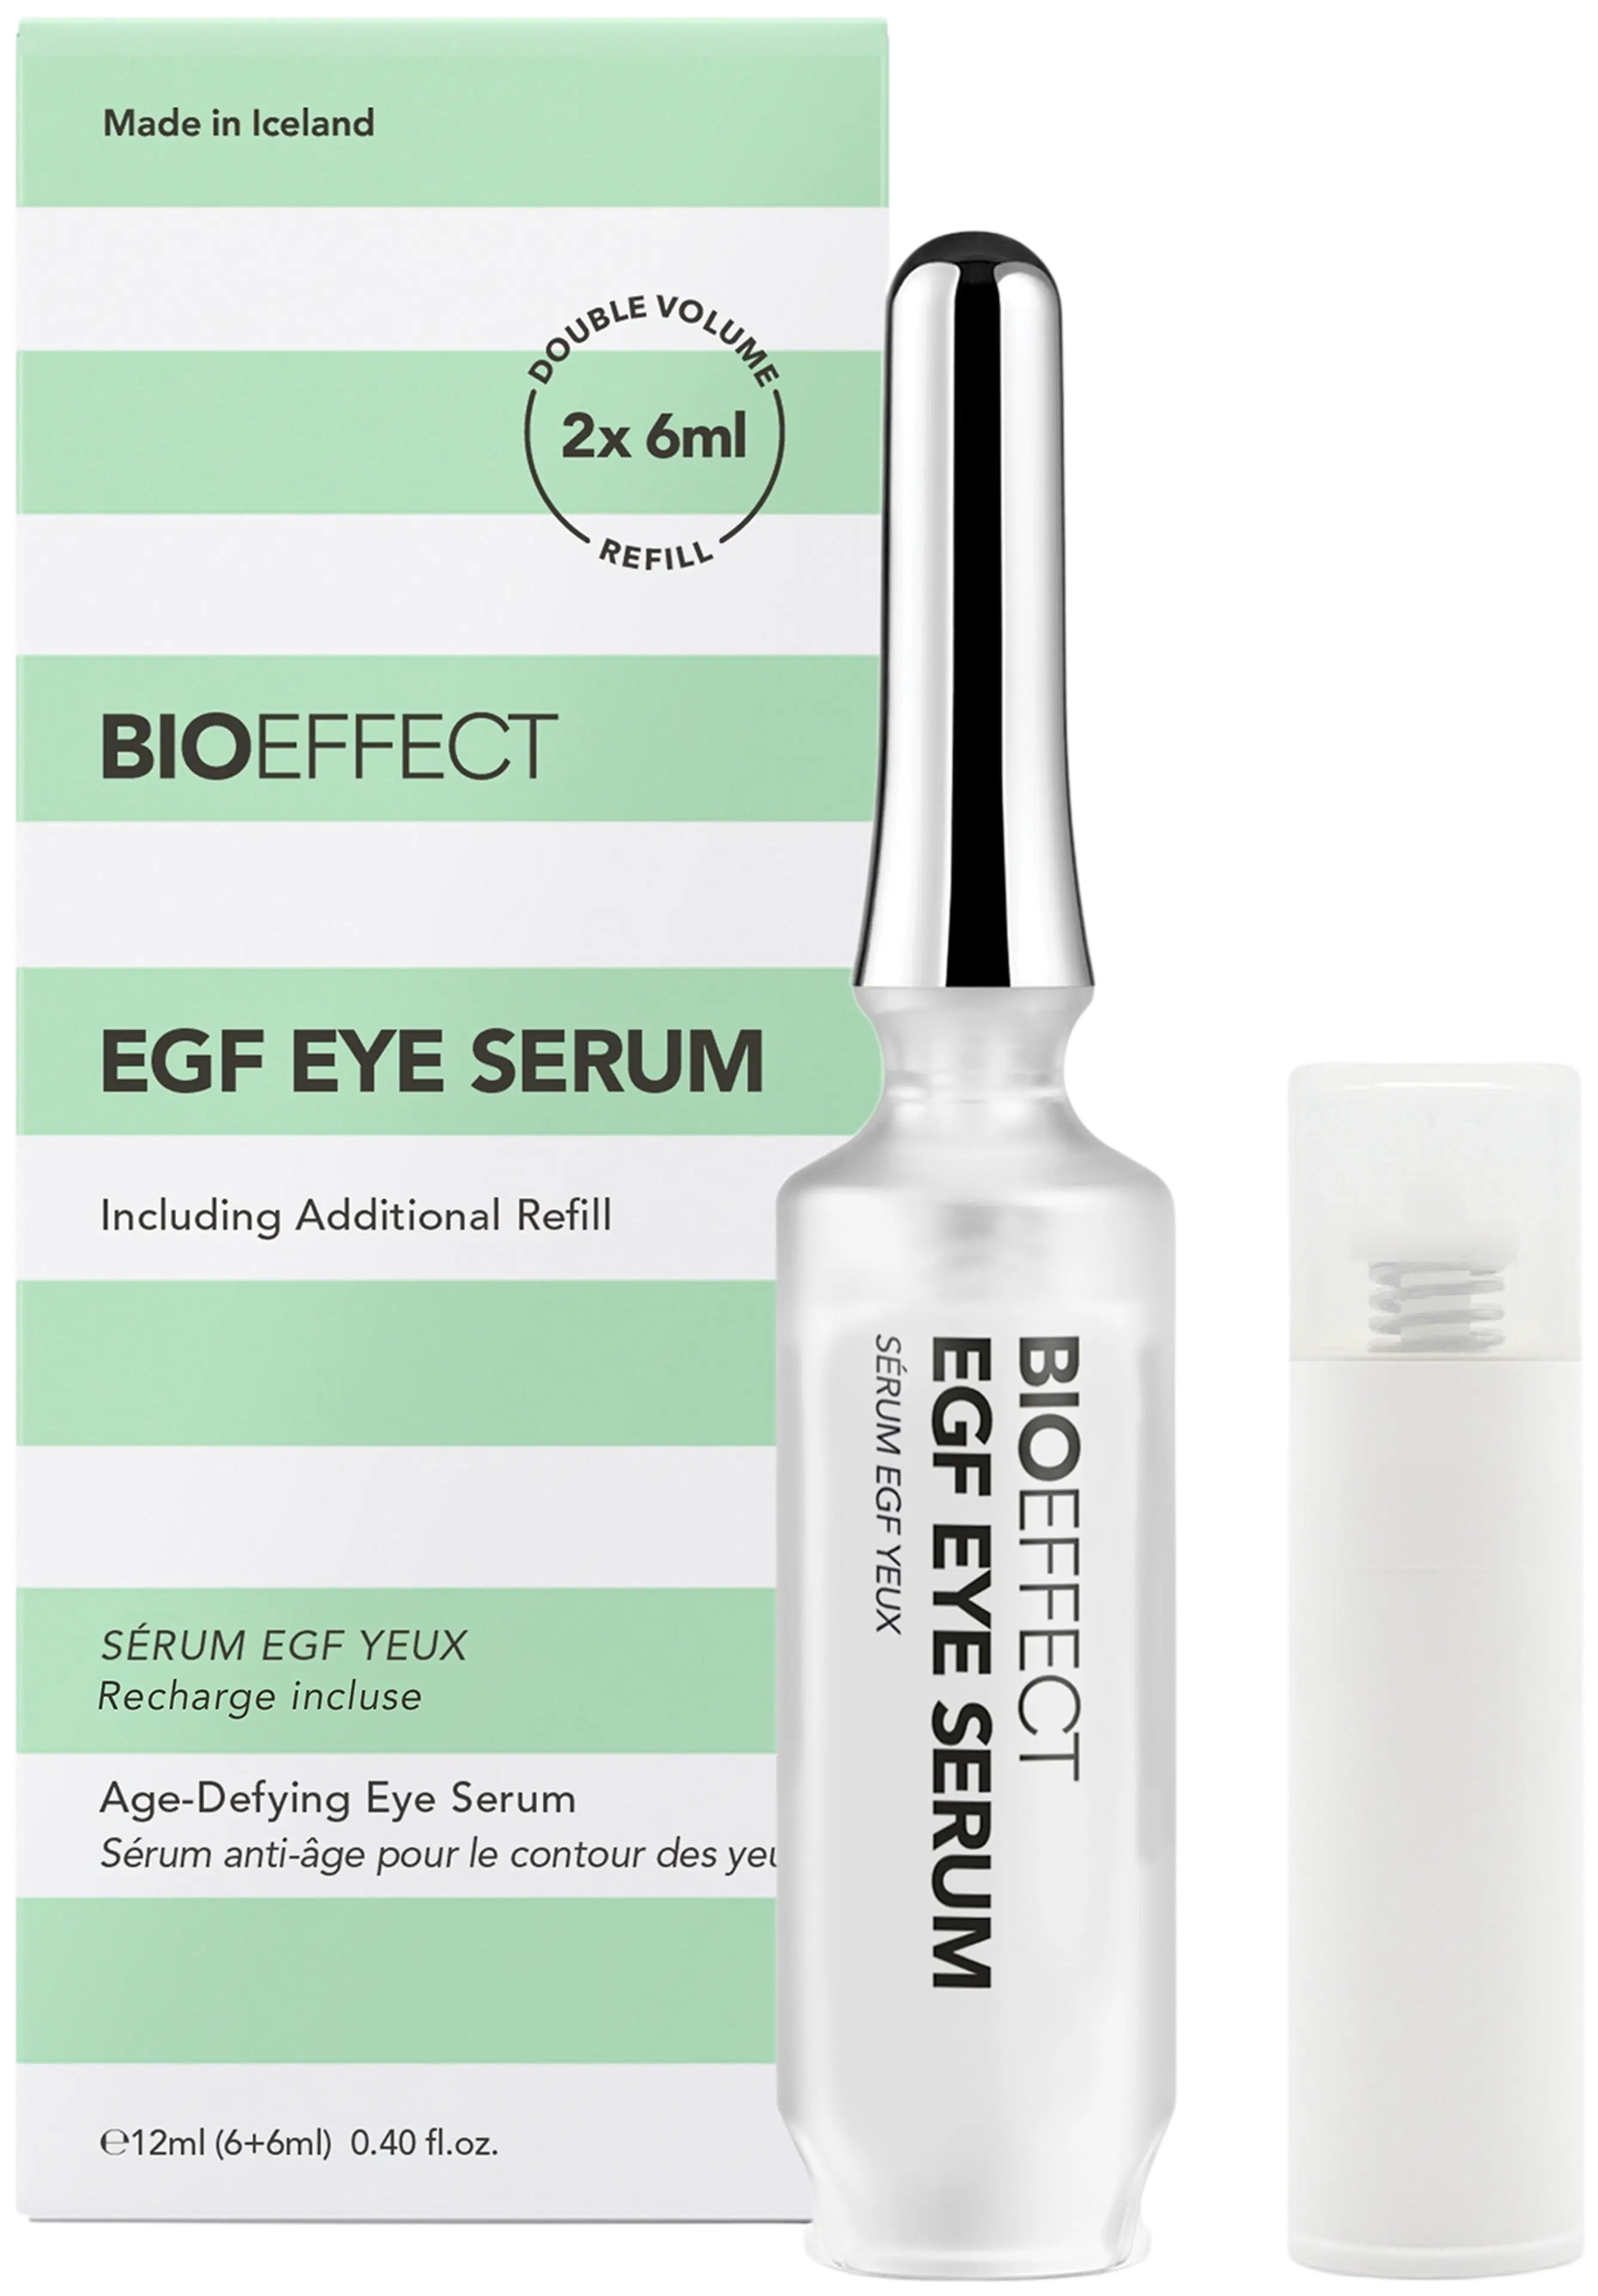 Bioeffect EGF Eye Serum täyttöpakkaus